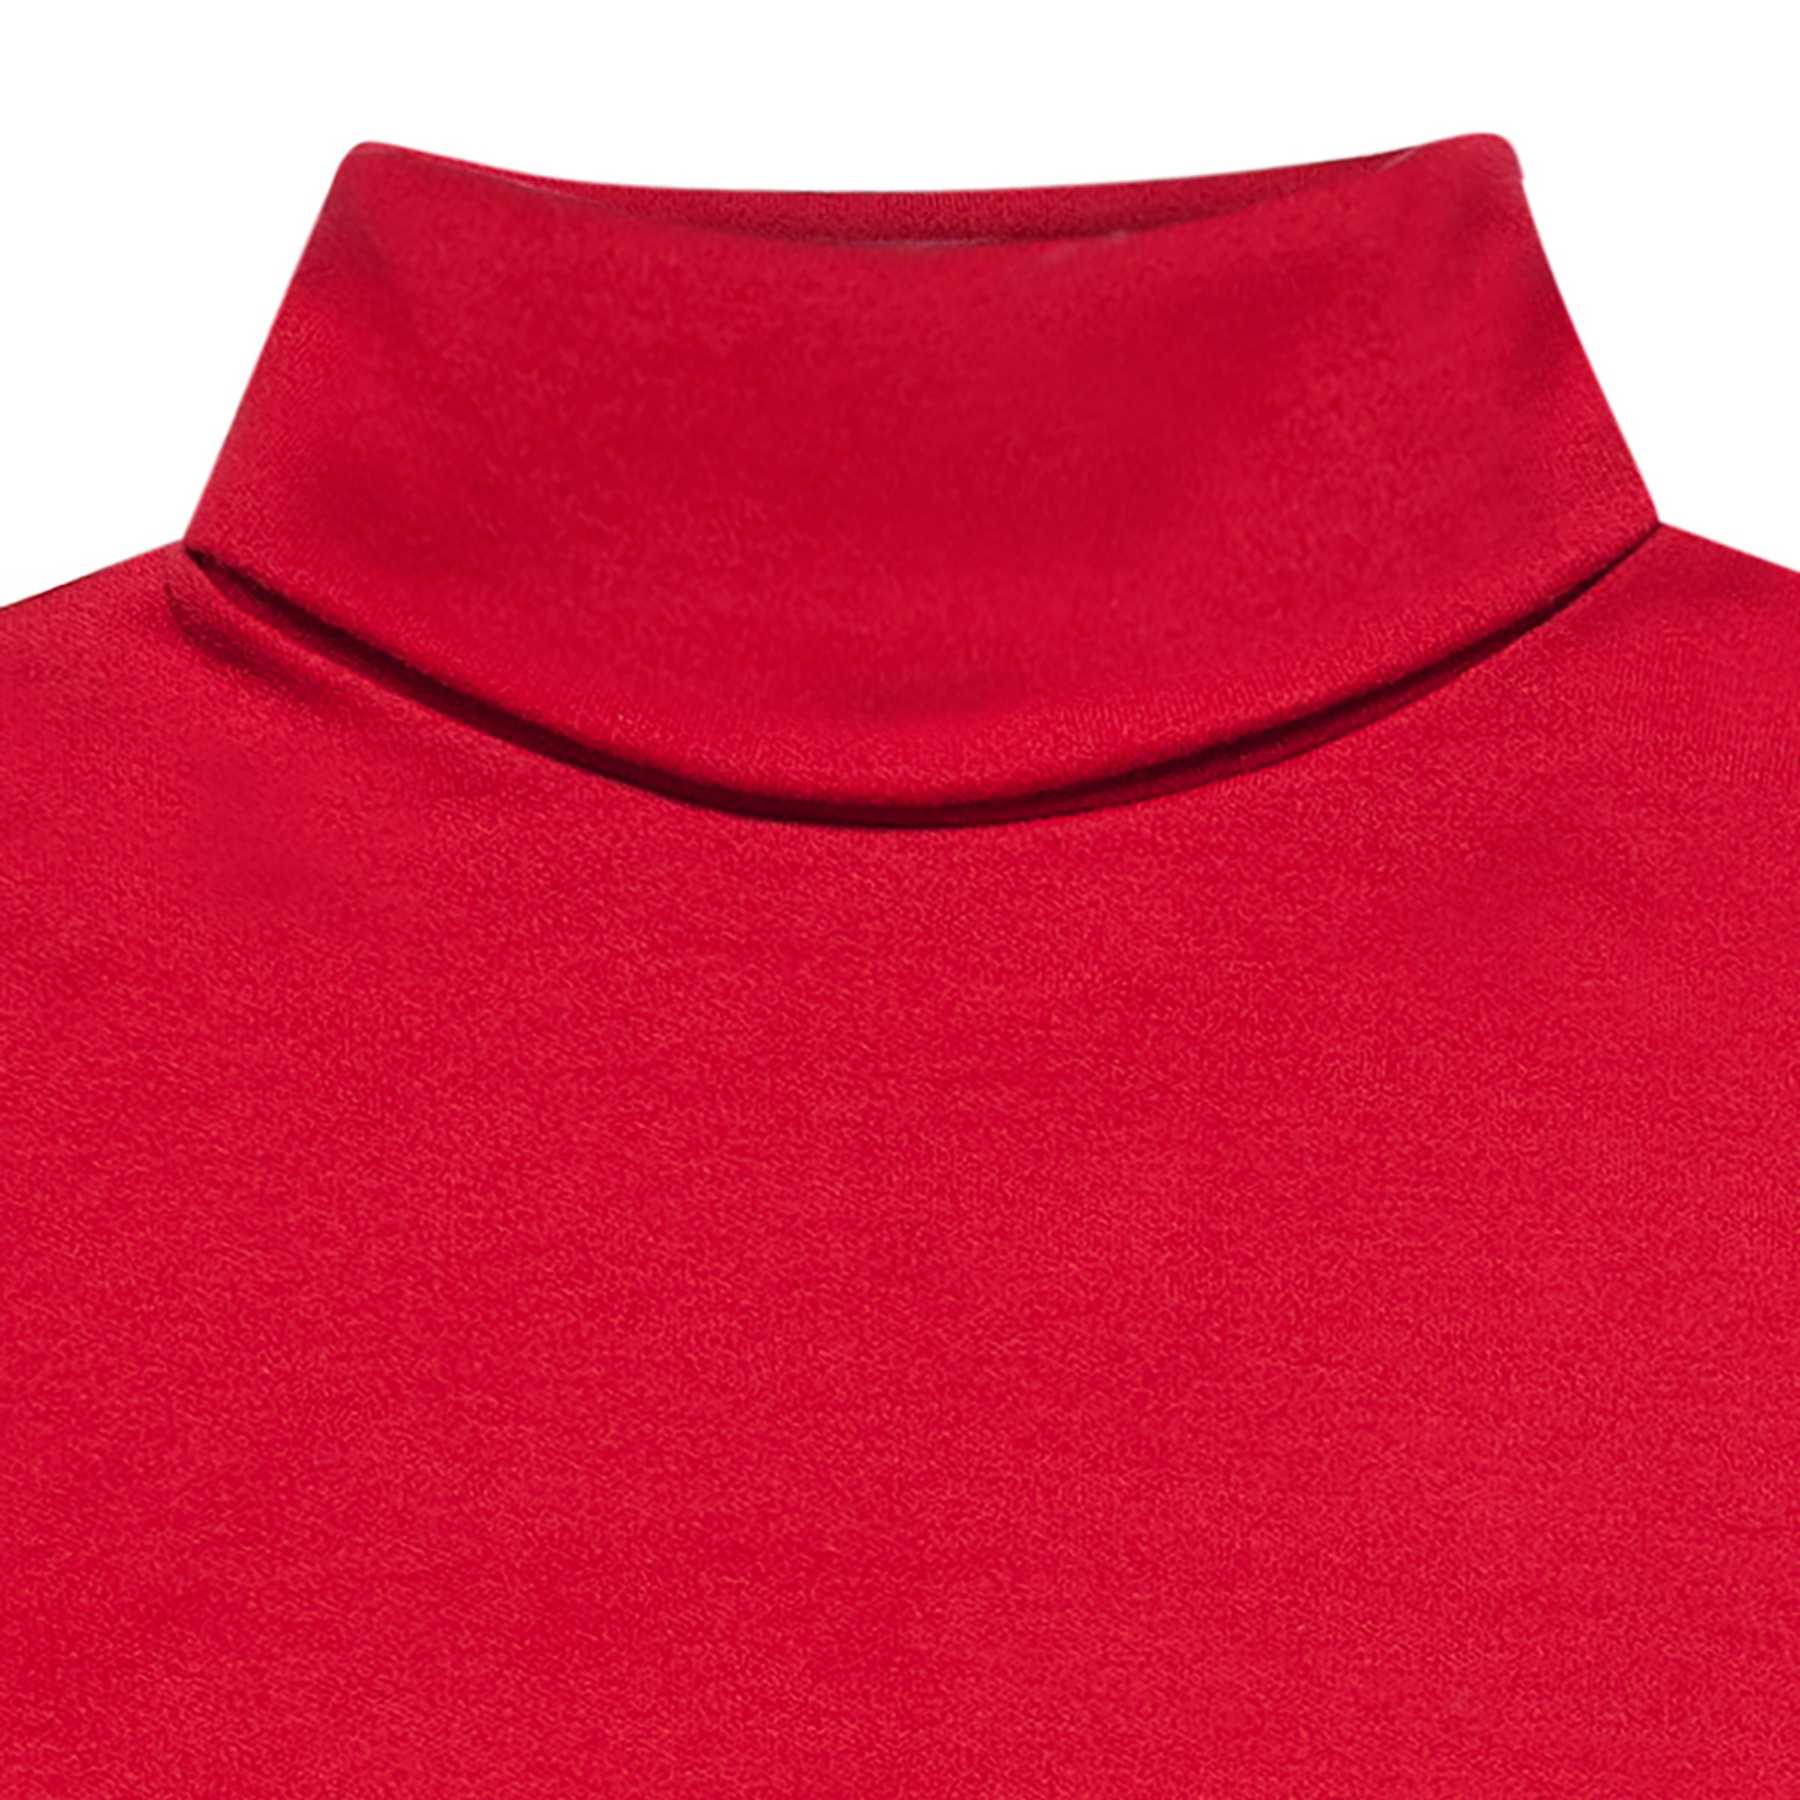 Pull Col Roulé coton jersey rouge, Filles Garçons 2-14 ans